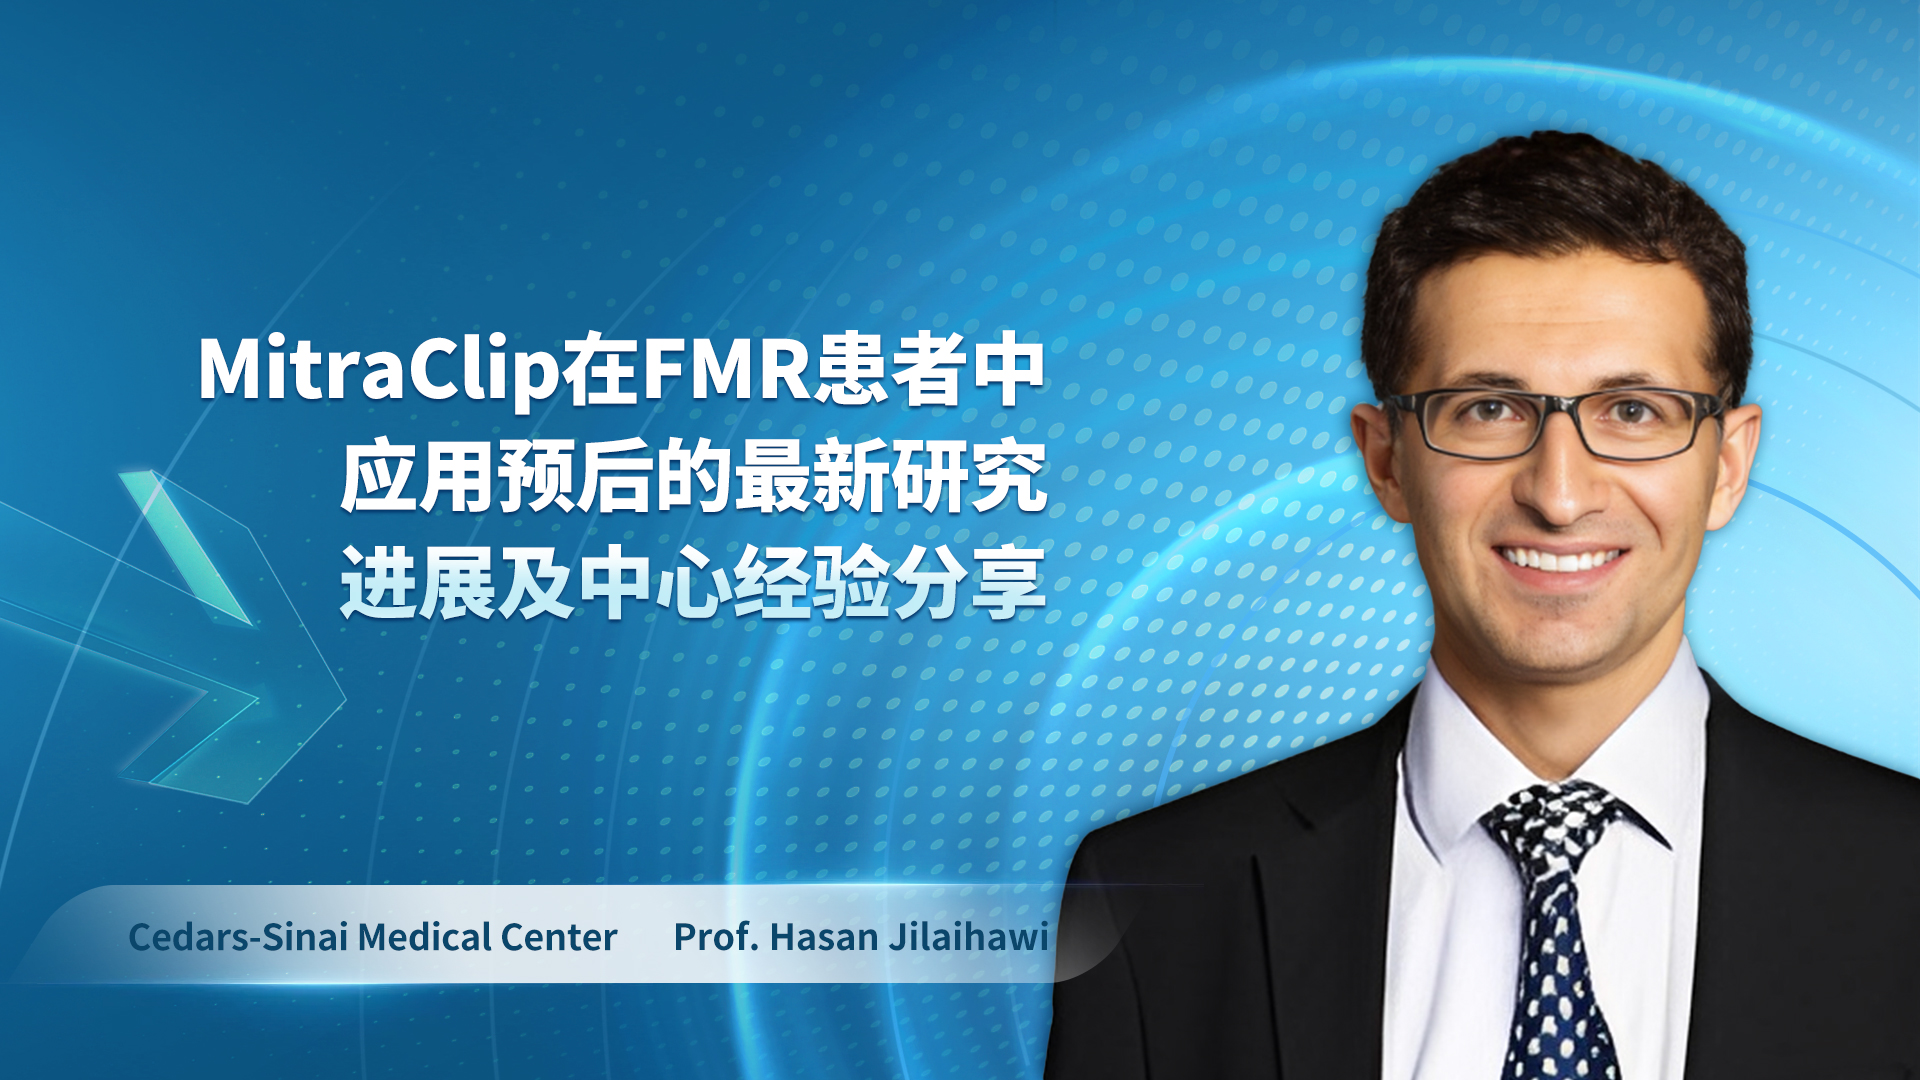 Prof. Hasan Jilaihawi-MitraClip在FMR患者中应用预后的最新研究进展及中心经验分享